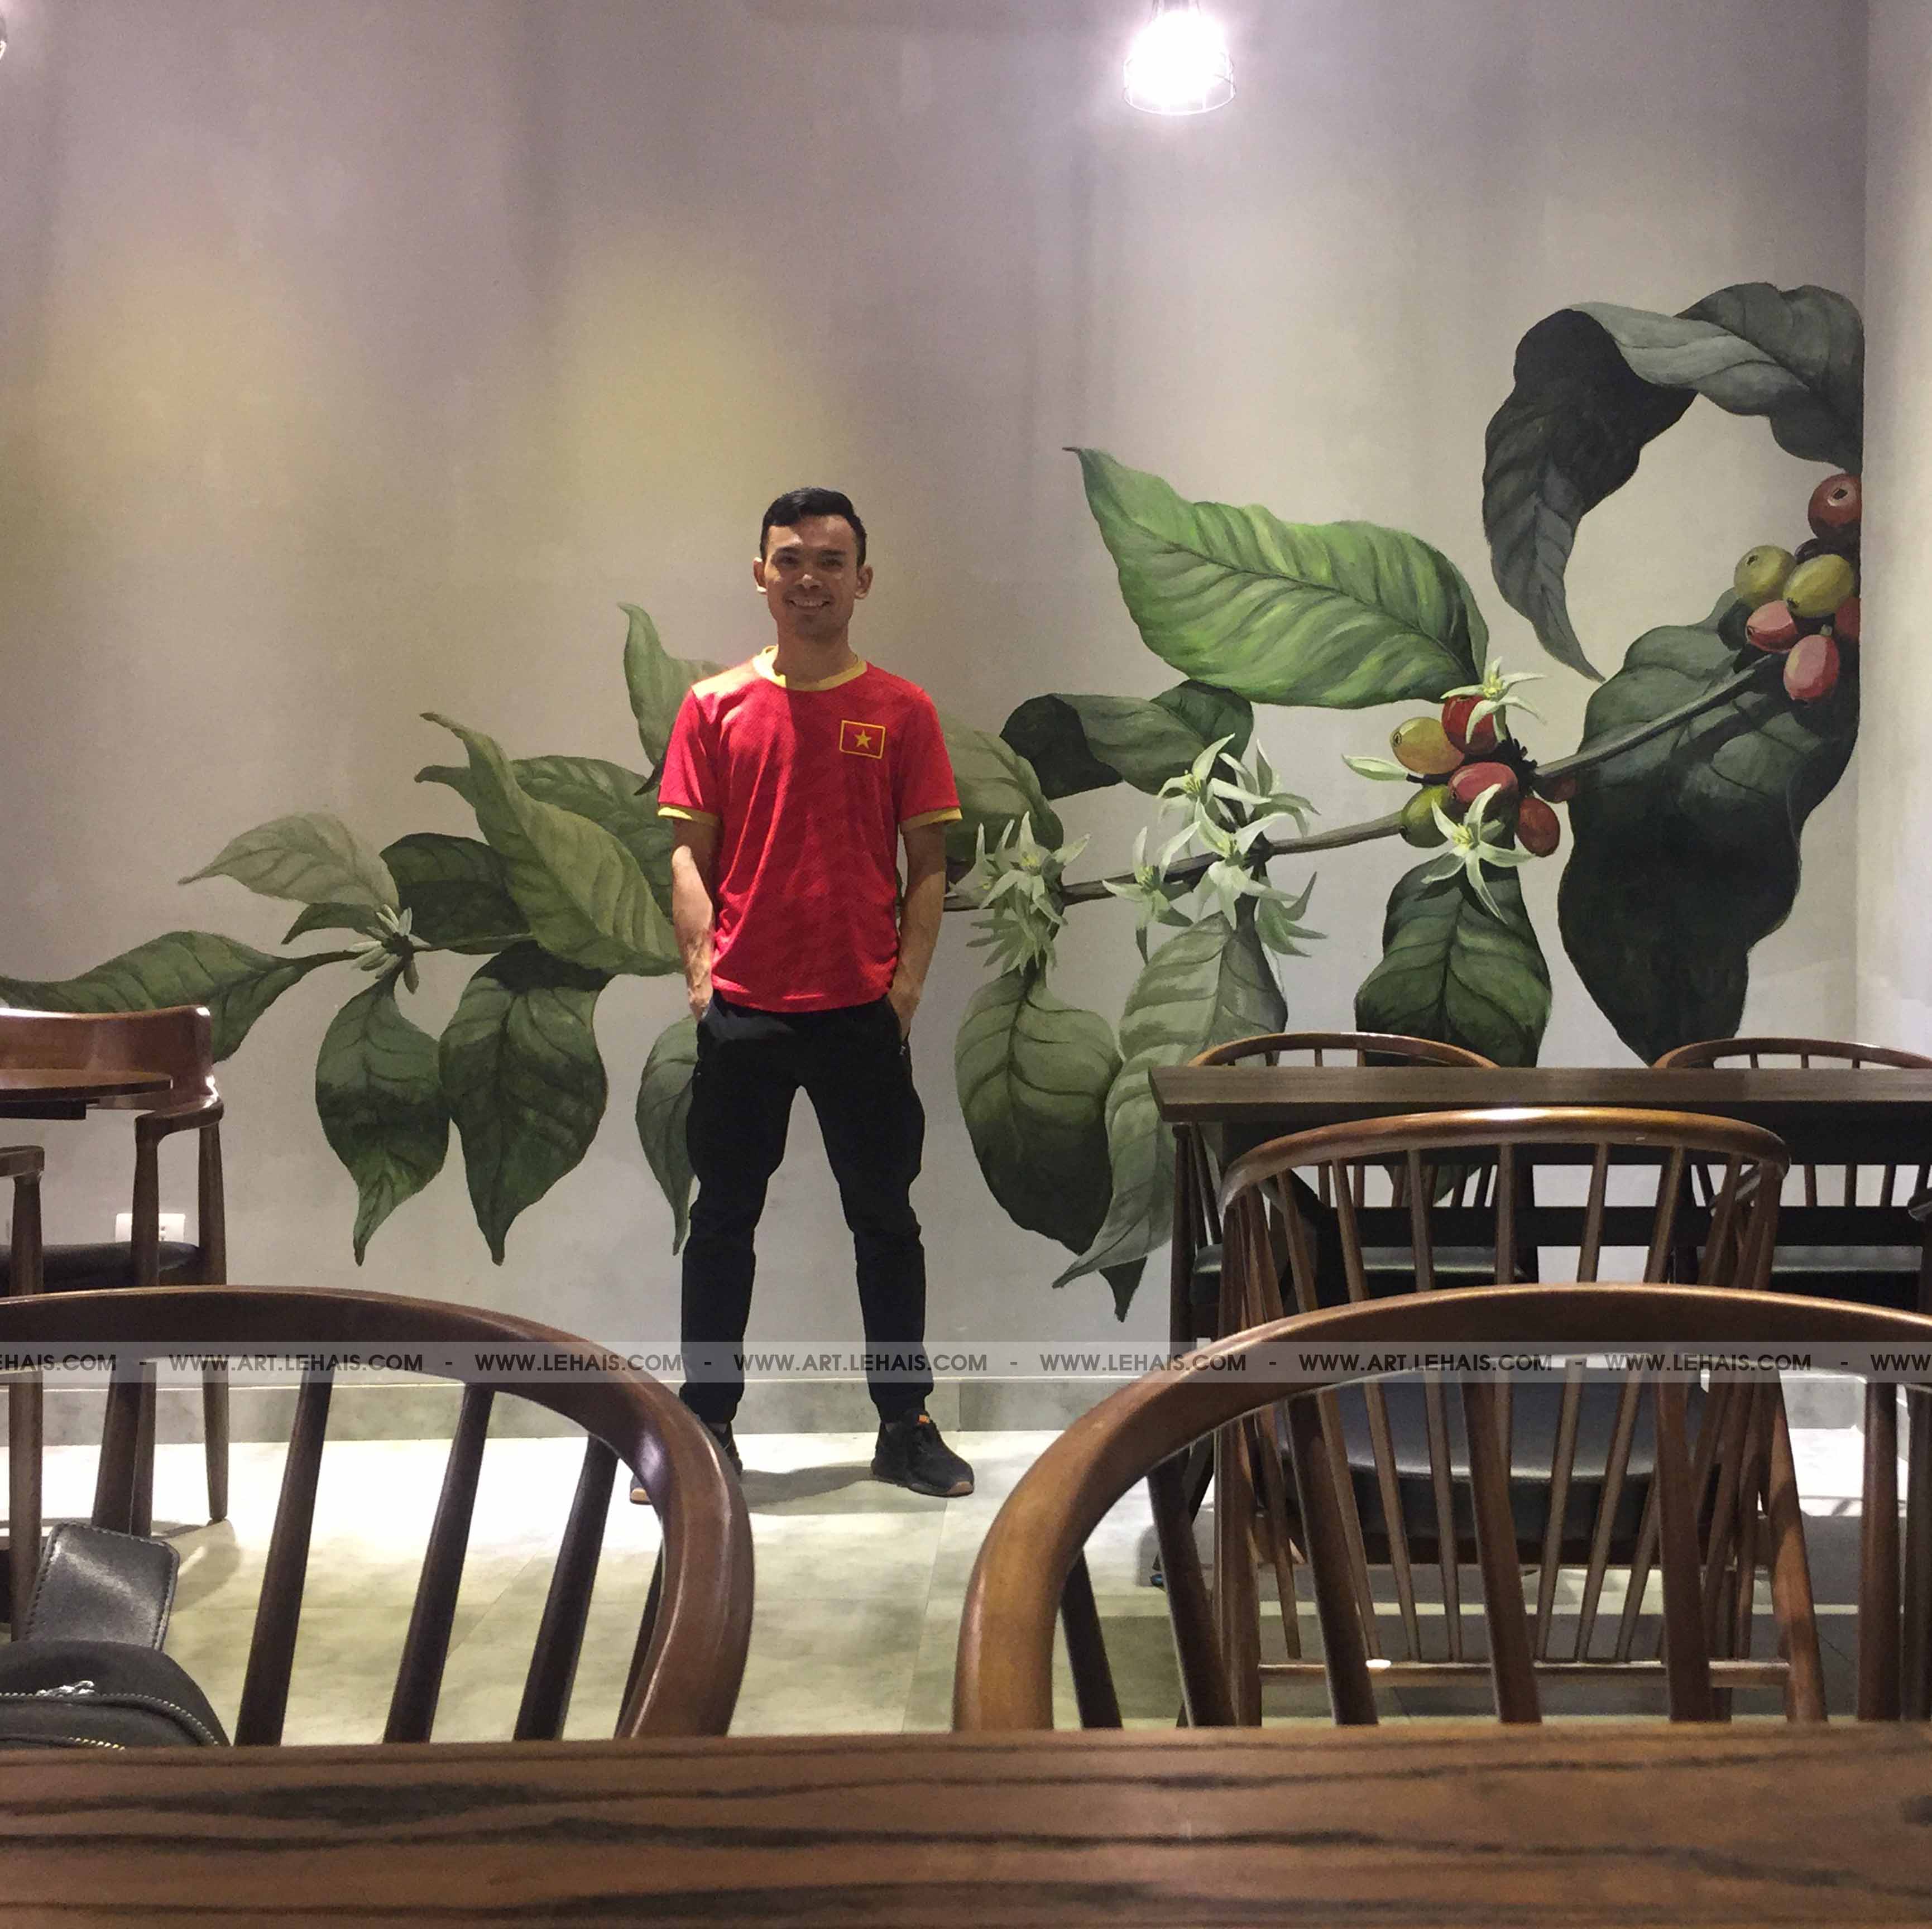 Vẽ cành cafe 3D trên tường quán cafe tại Tô Ngọc Vân, Tây Hồ, Hà Nội - TT162LHAR